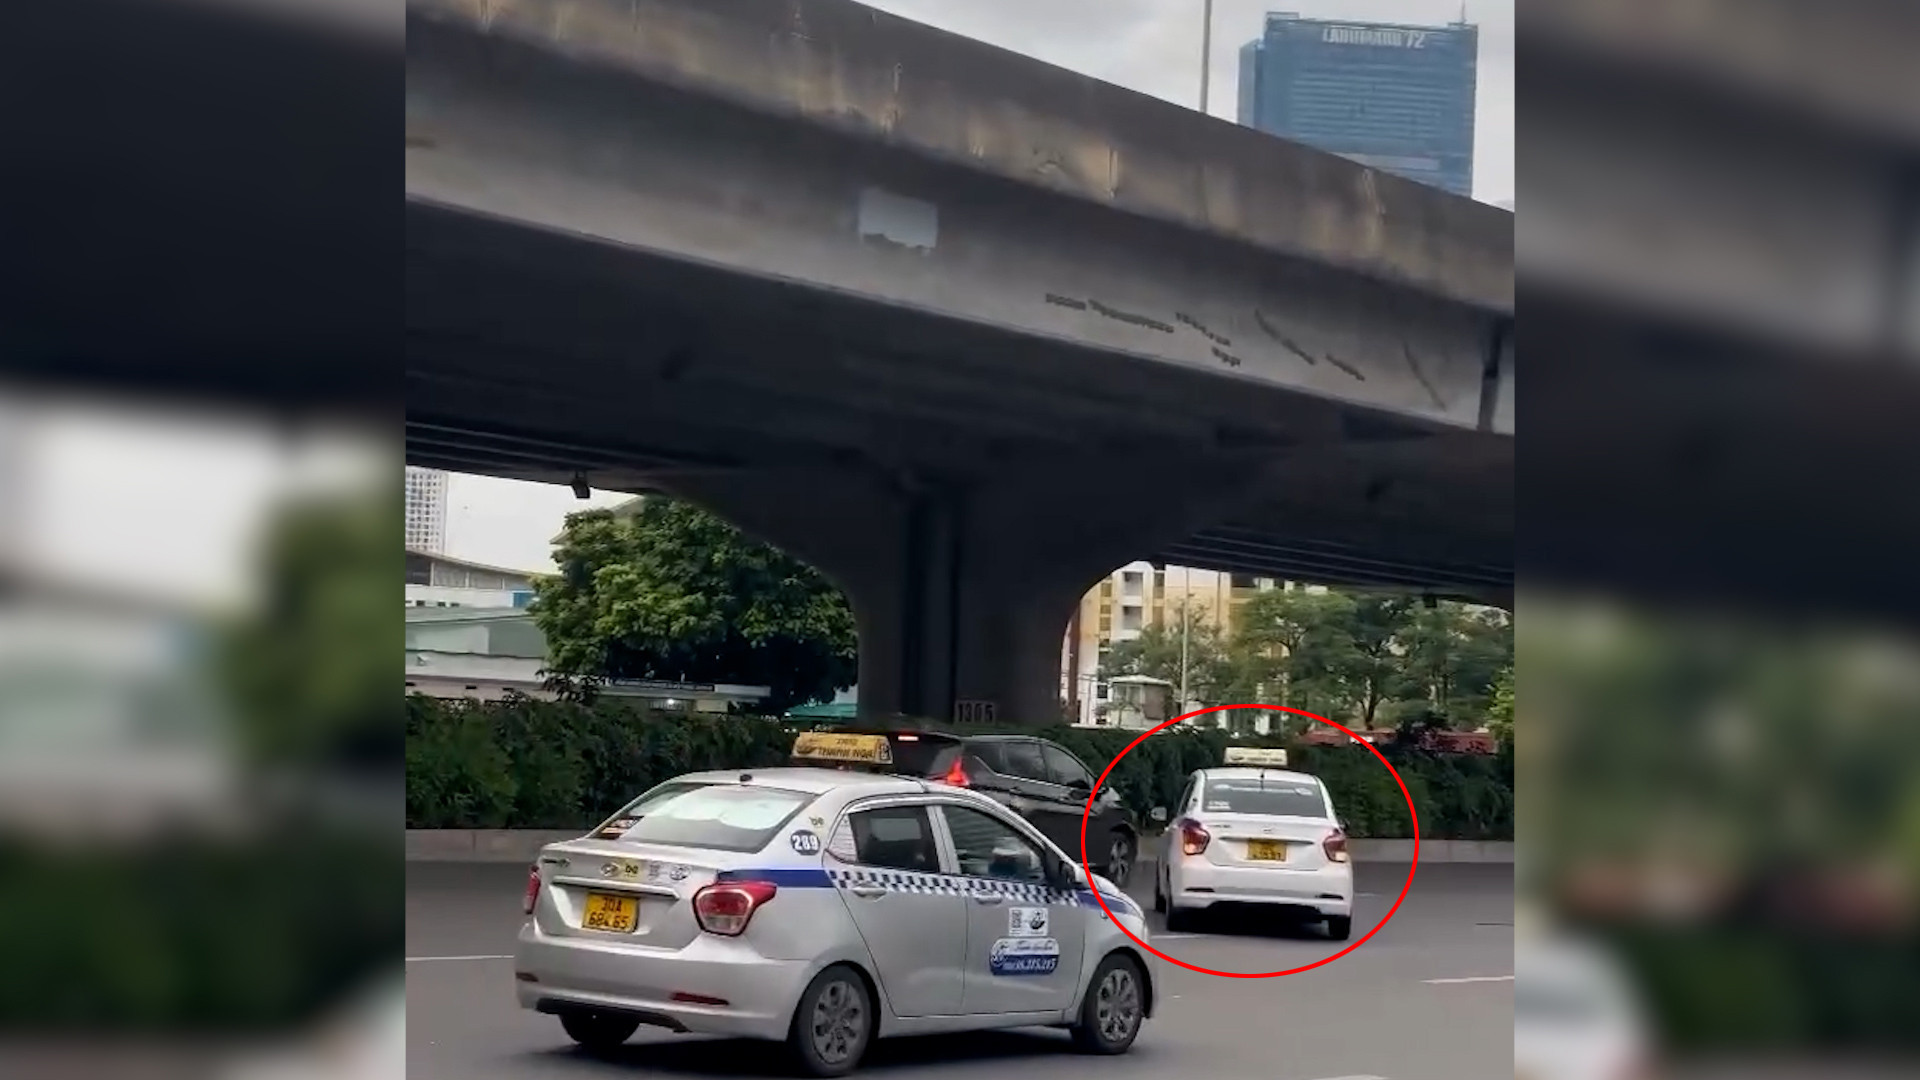 Công an triệu tập người lái taxi ngược chiều, đánh võng trên đường ở Hà Nội - Ảnh 2.